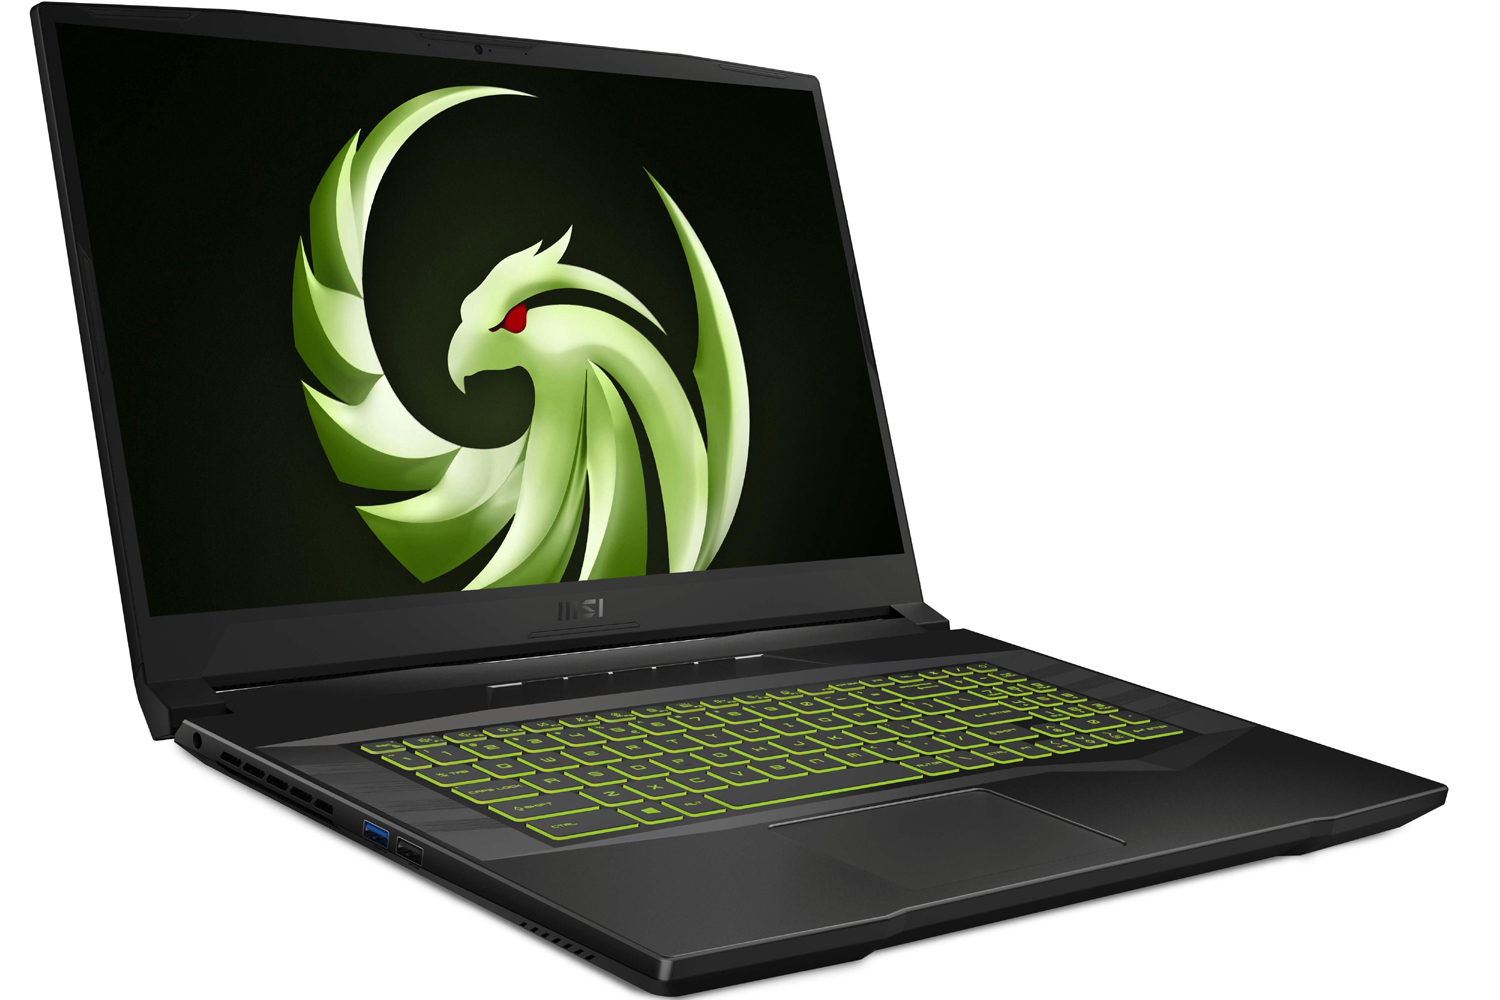 O laptop para jogos MSI Alpha 17 exibindo o logotipo da MSI em verde.